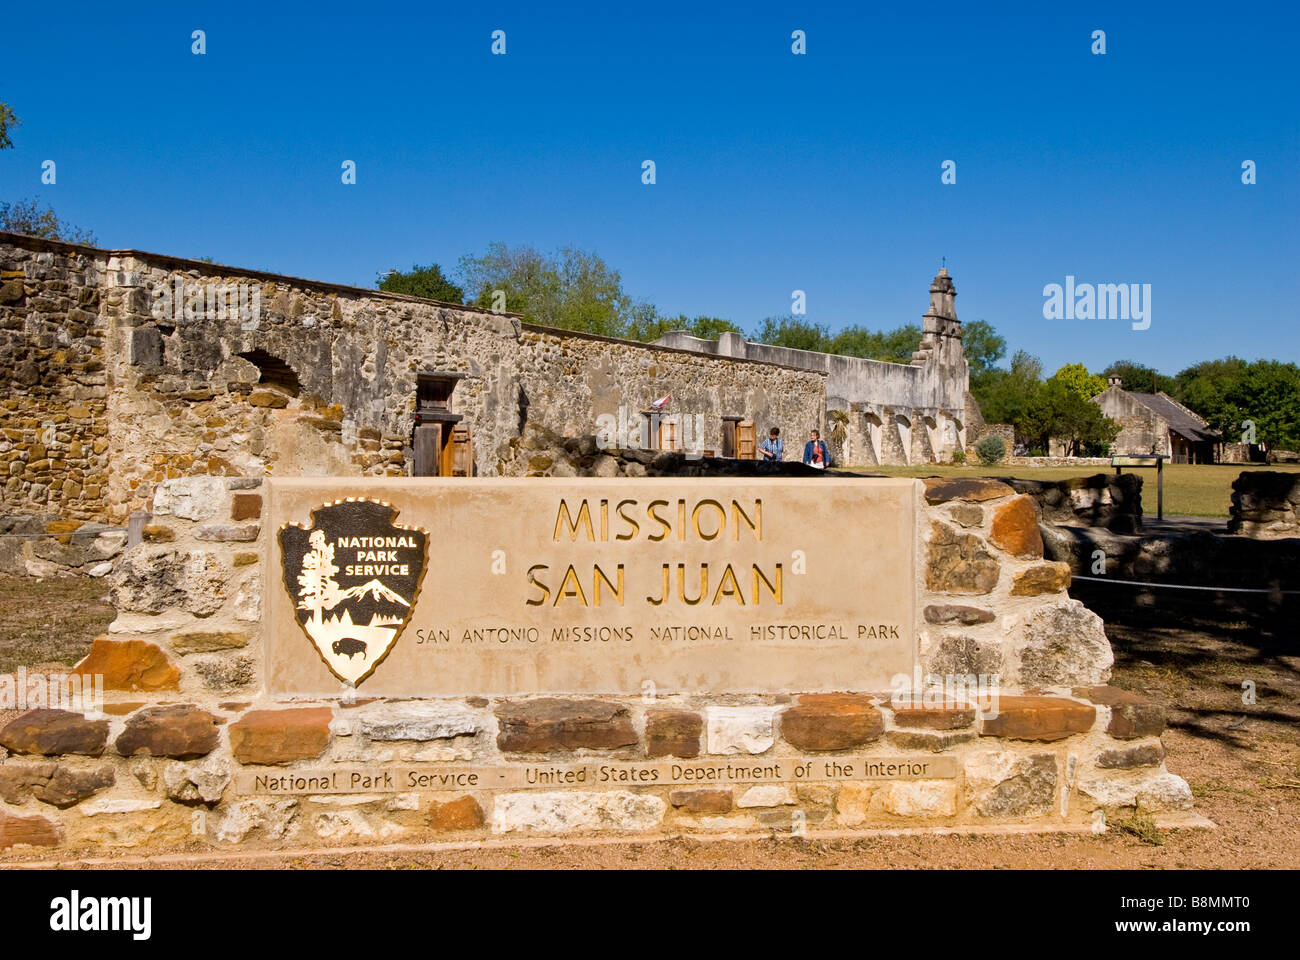 Mission San Juan entrance sign San Antonio missions national historical park us national park service  tourist destination Stock Photo